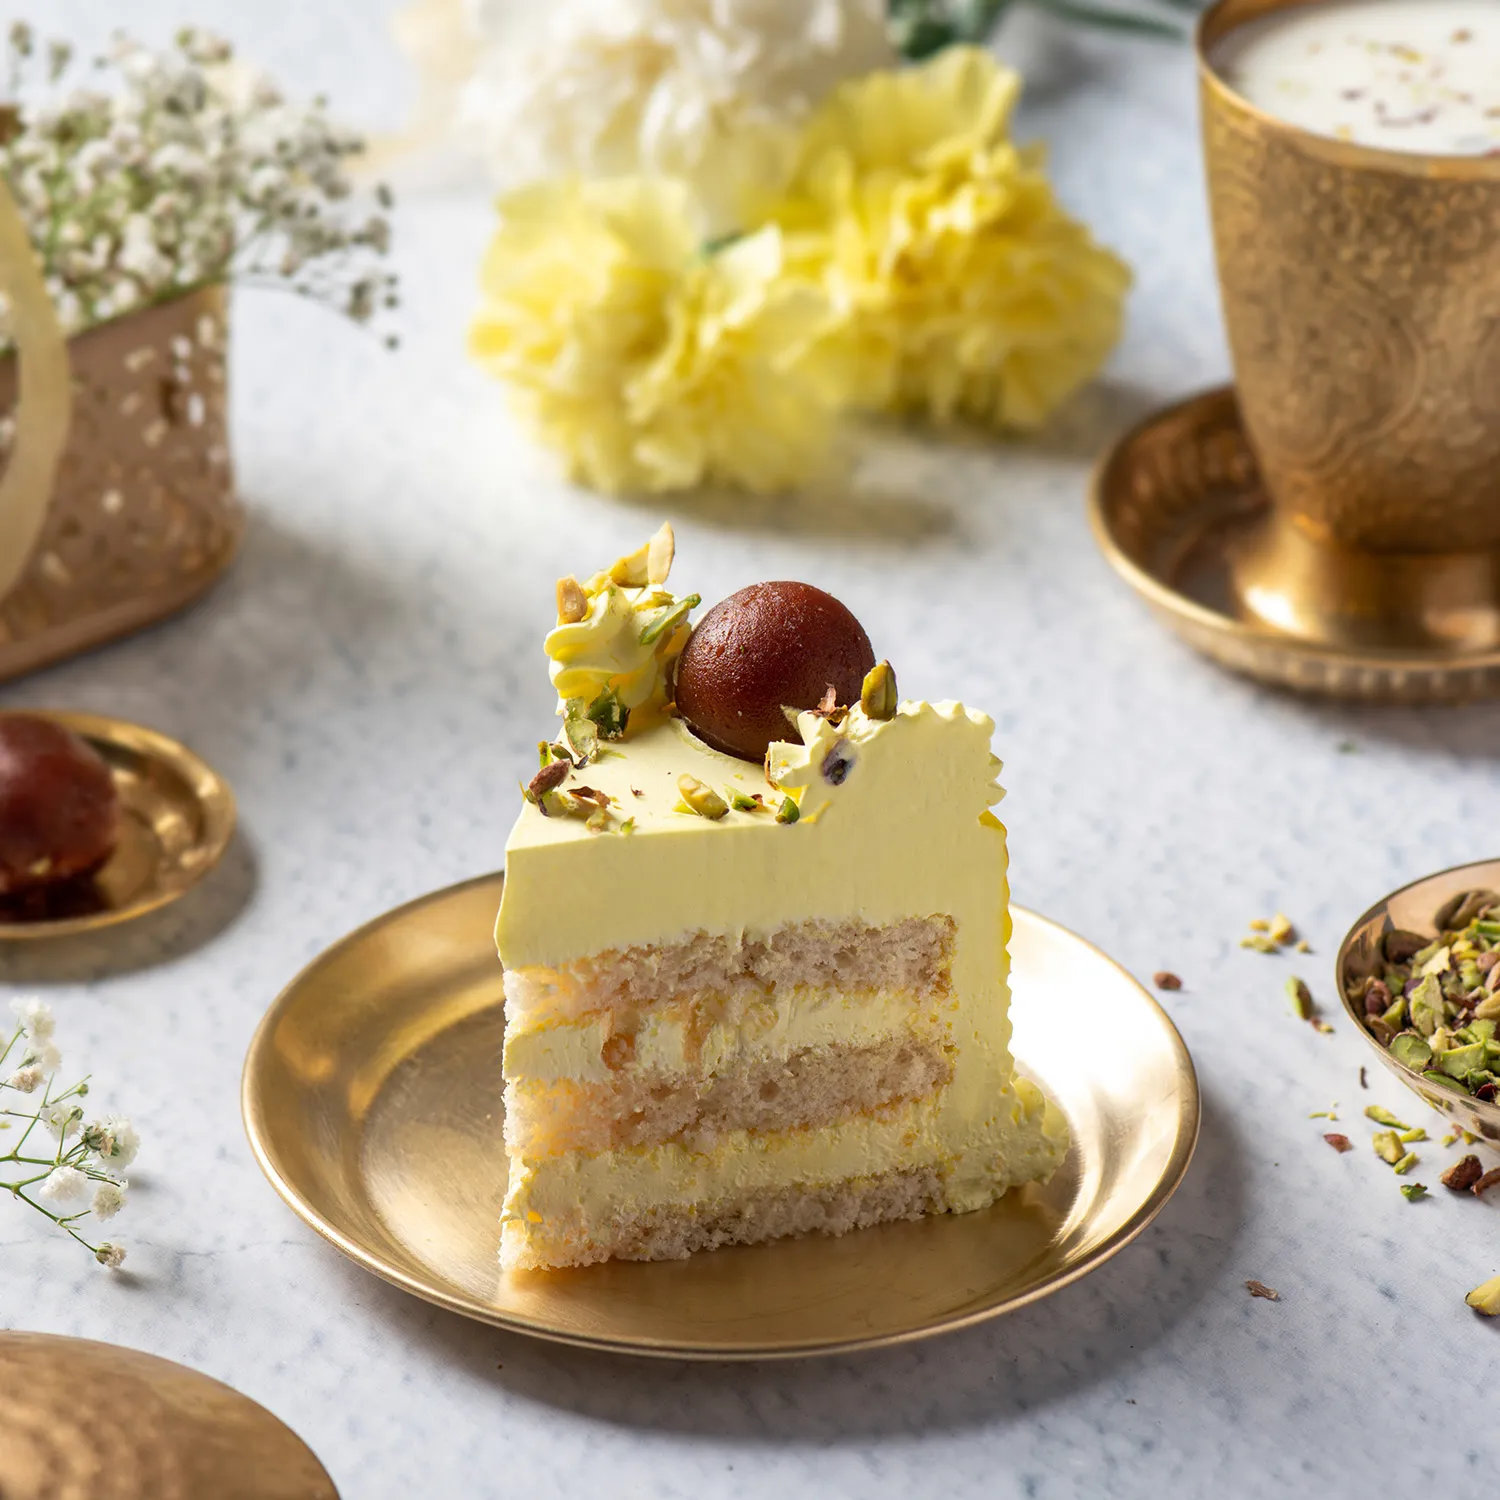 Vanilla Cake With Gulab Jamun - 1 KG